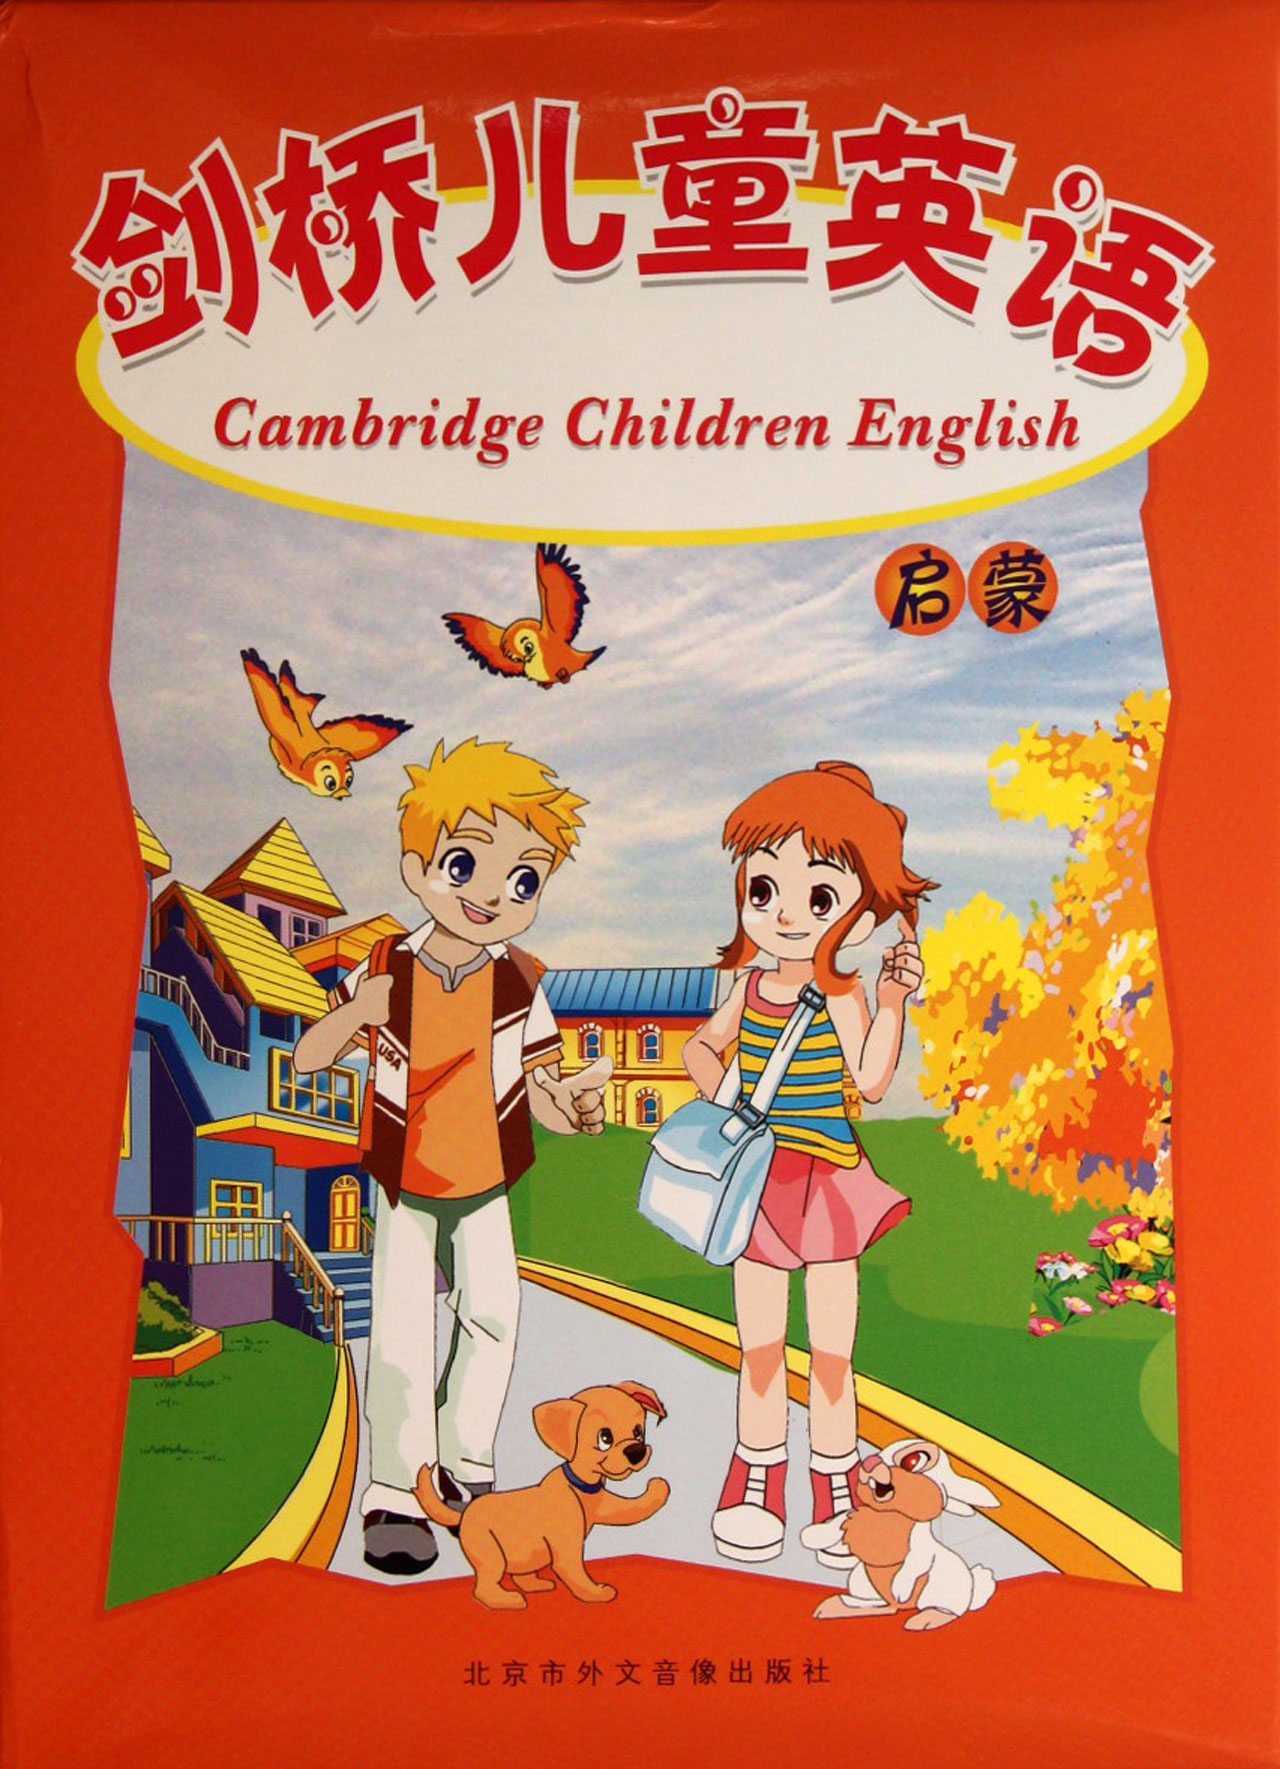 DVD剑桥儿童英语启蒙(2碟附书)